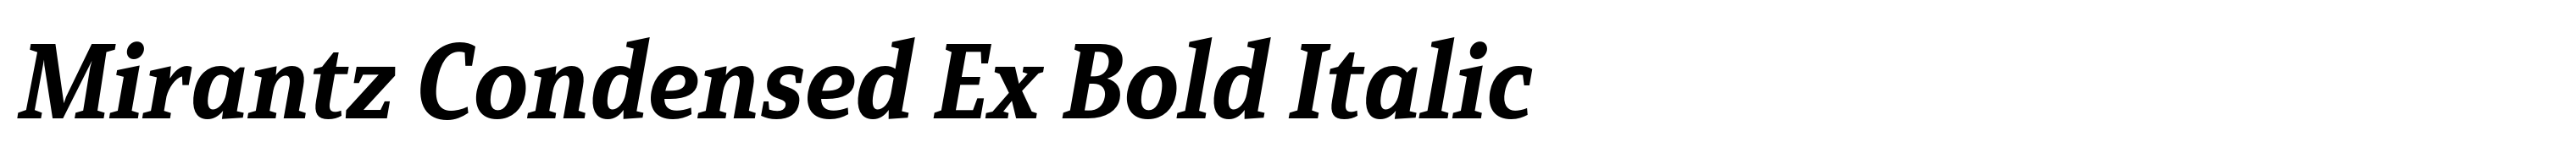 Mirantz Condensed Ex Bold Italic